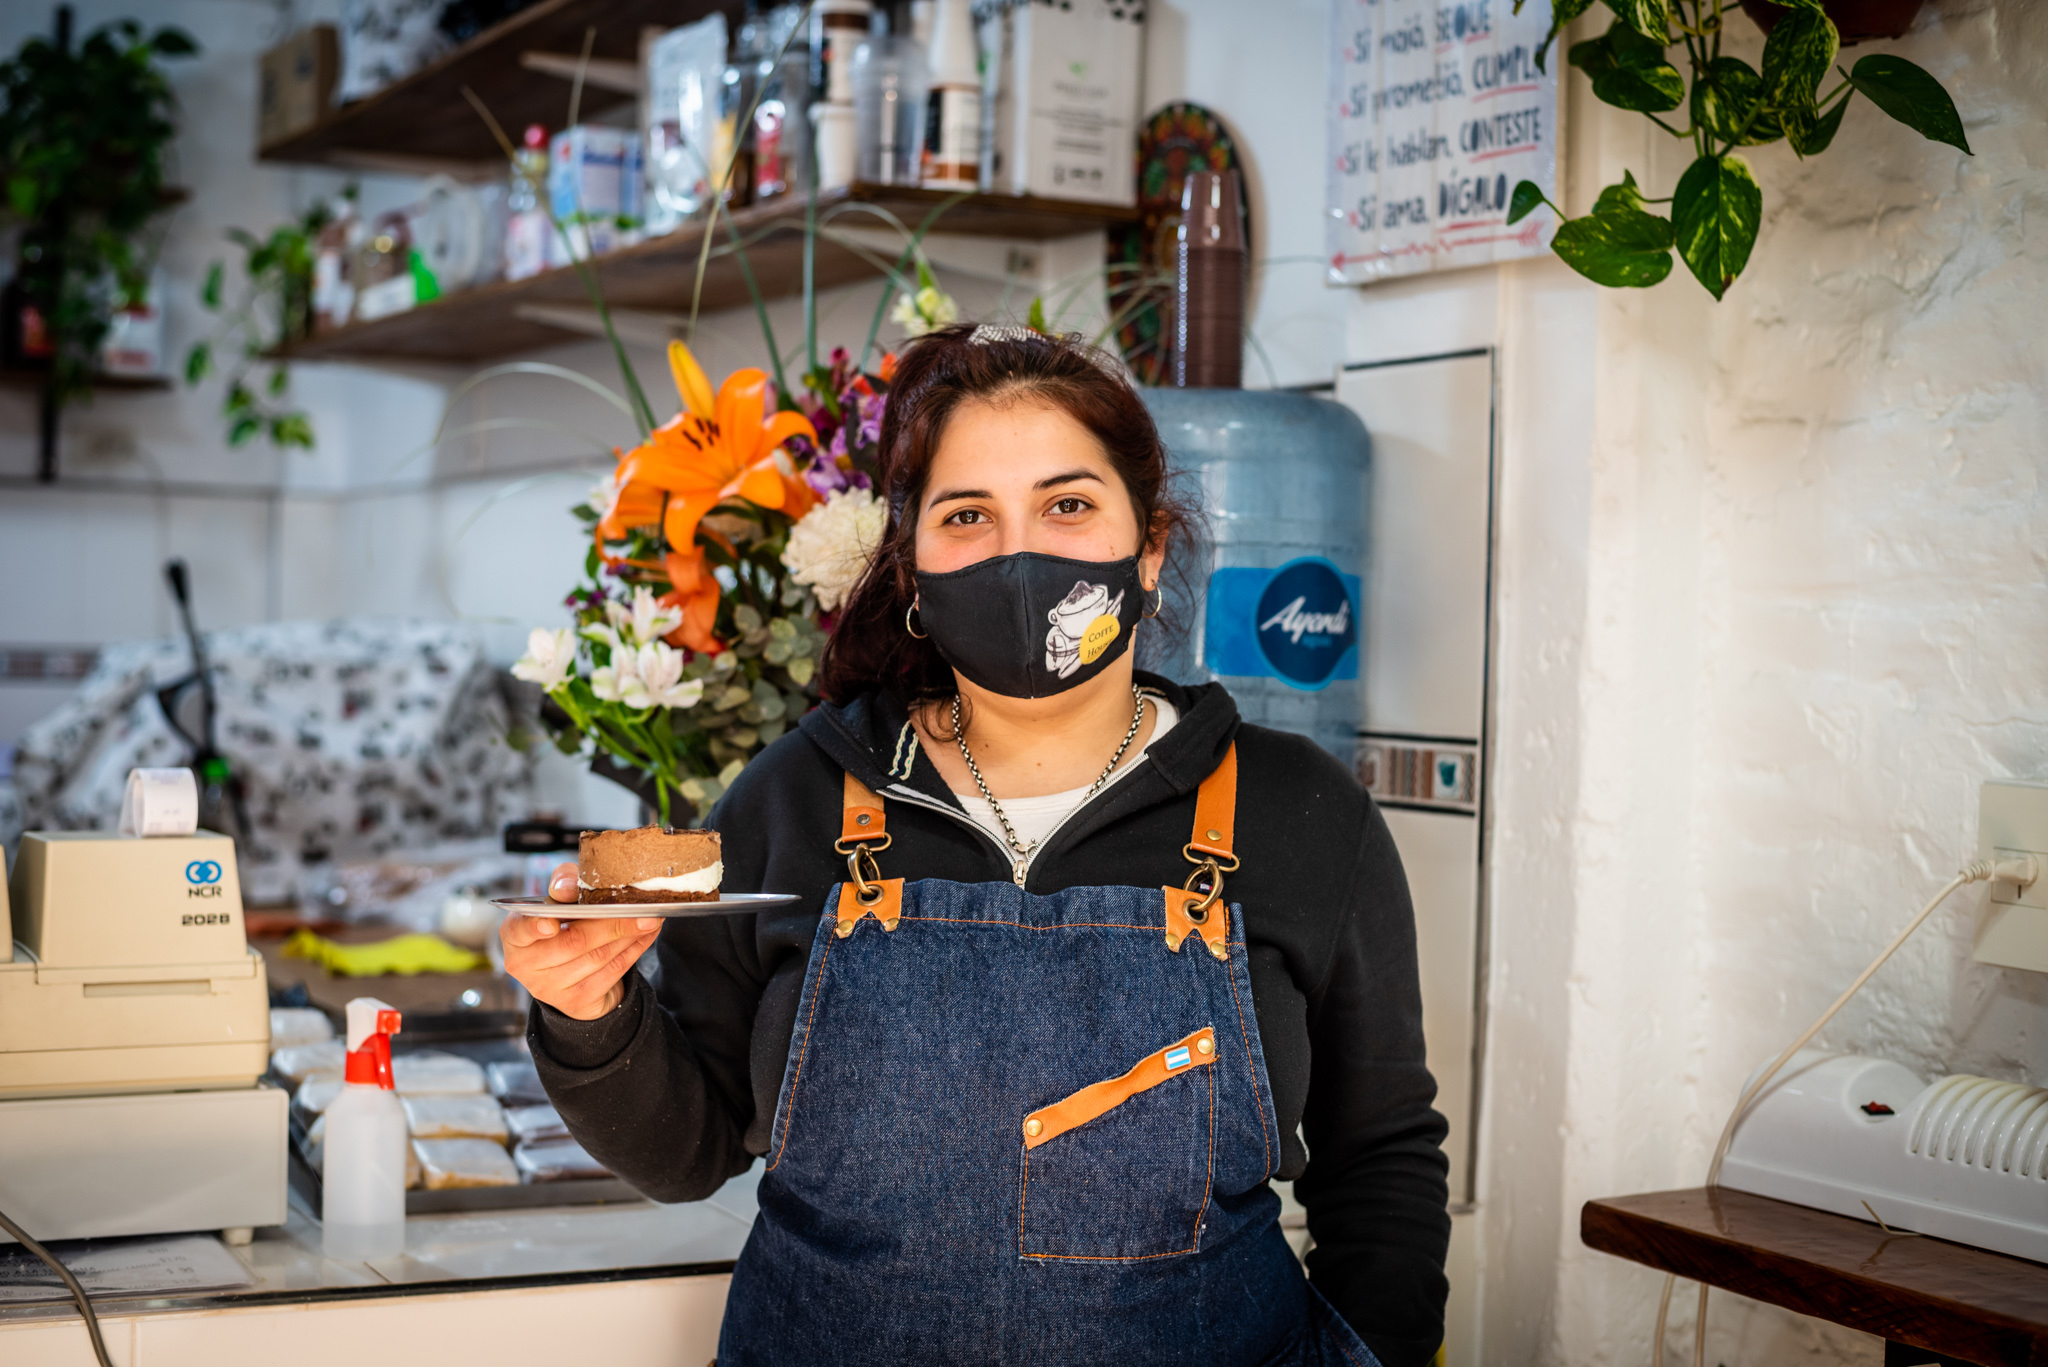 Agustina, de 27 años, logró emprender con su cafetería este año en el Barrio 31 gracias a la ayuda de su familia luego de finalizar su relación laboral en una cadena de cafeterías